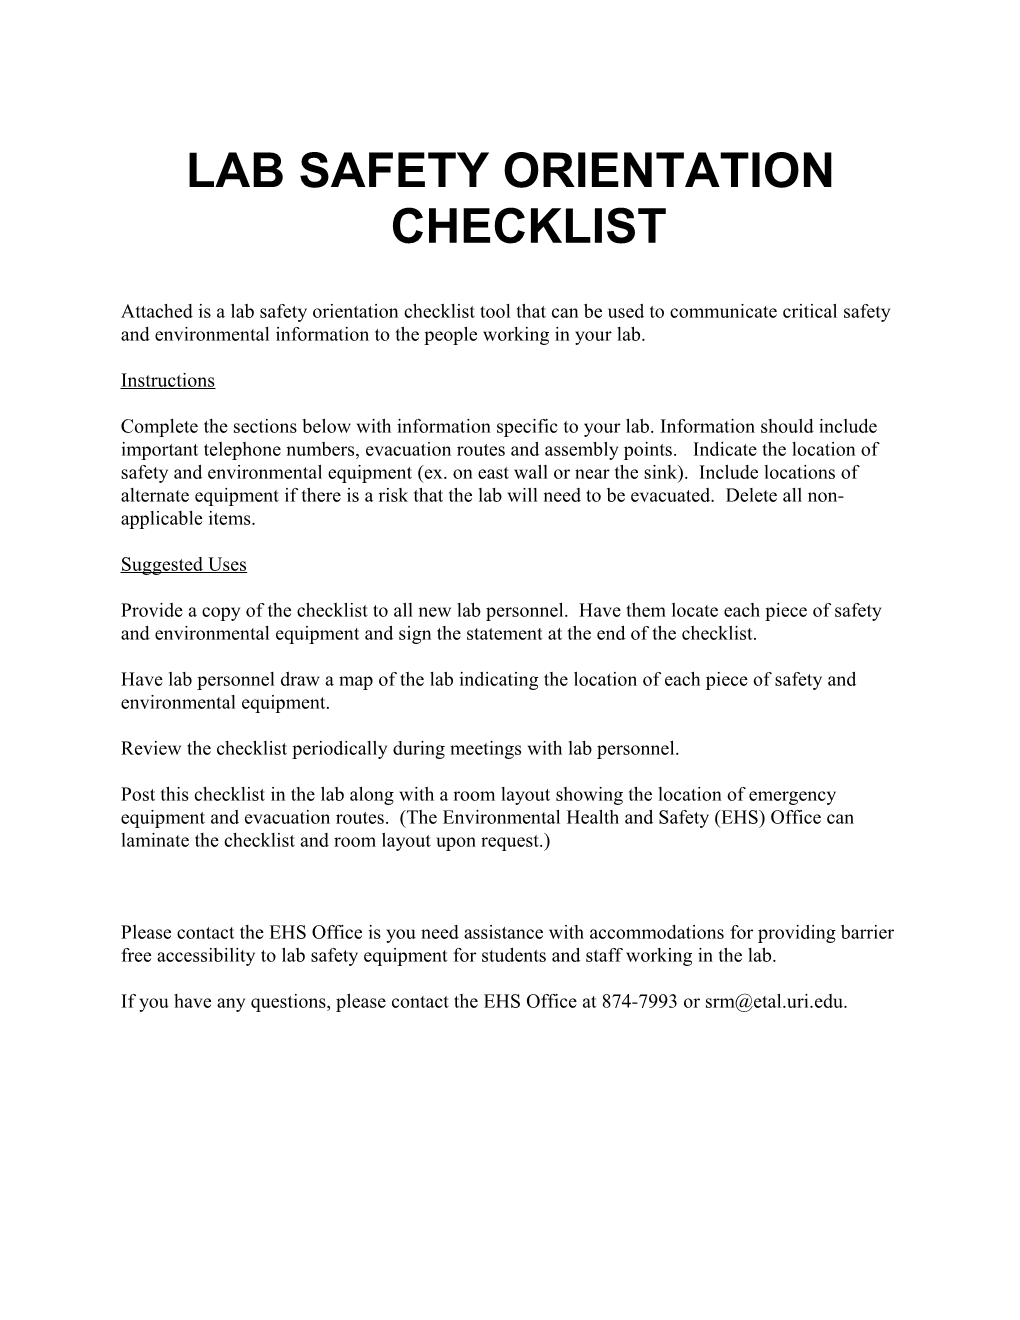 Lab Safety Orientation Checklist